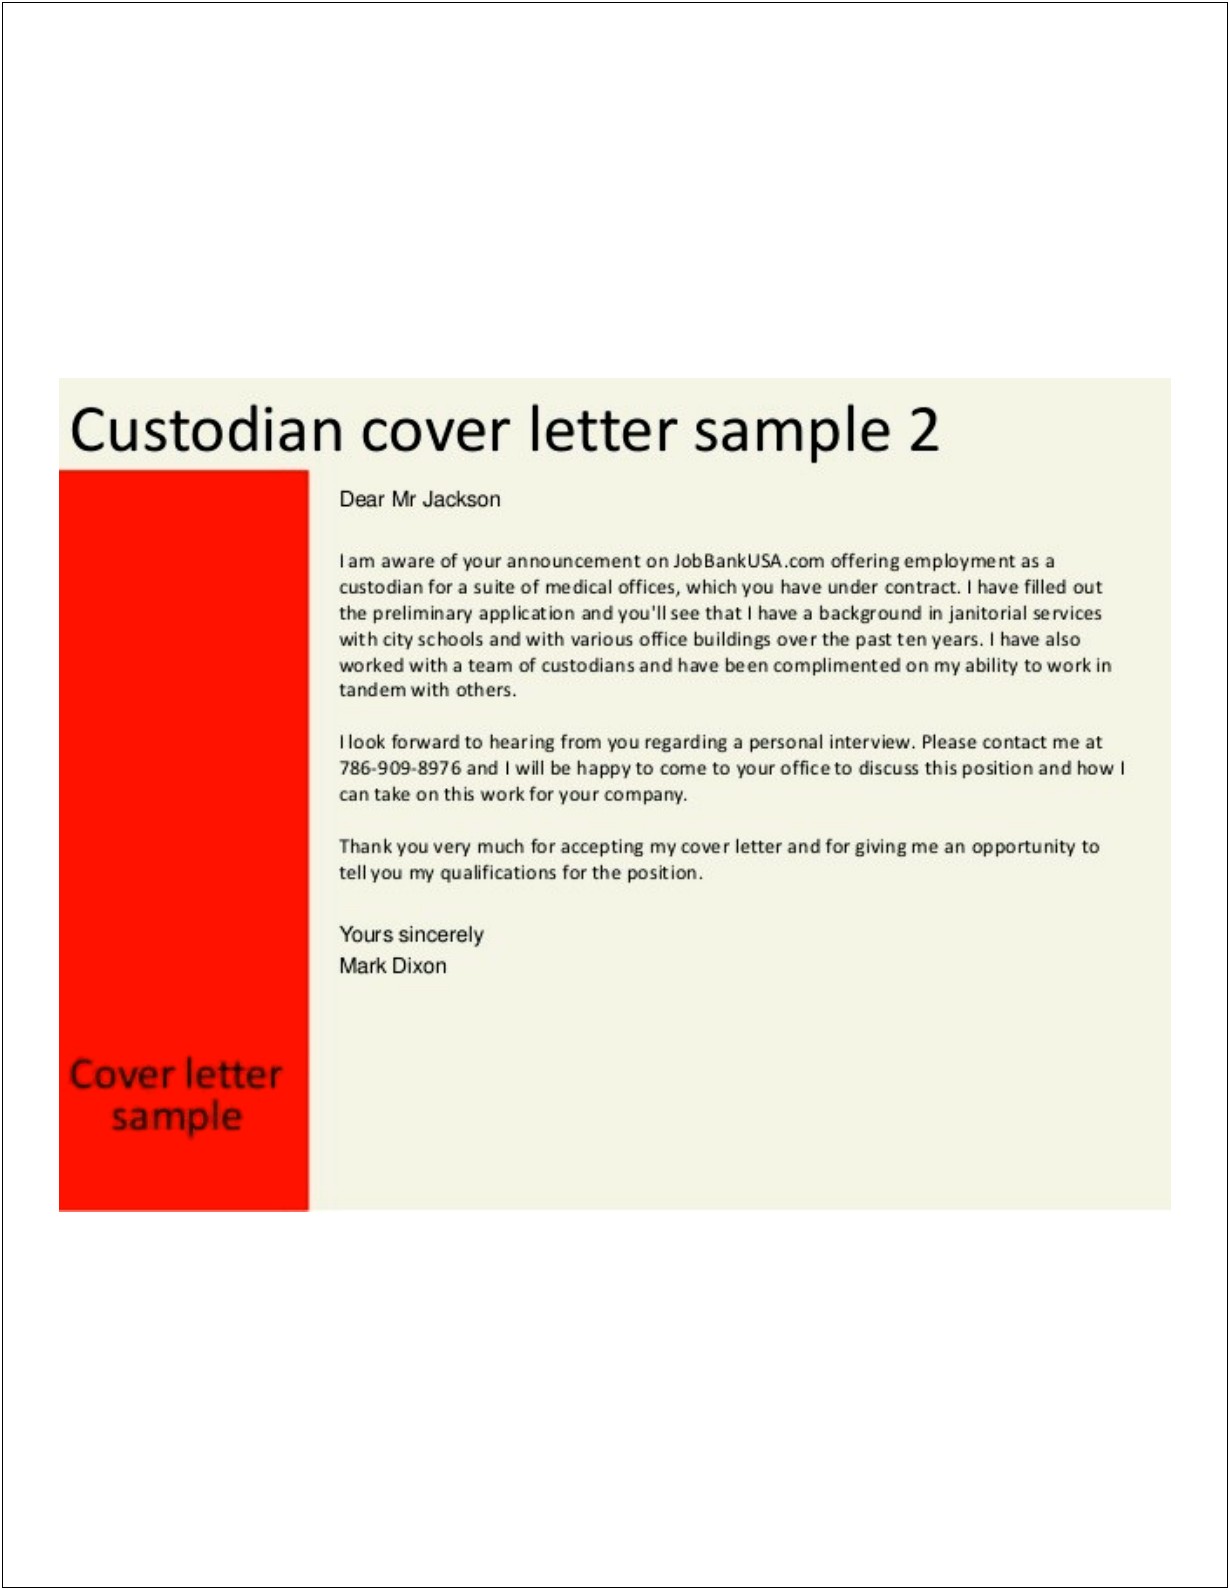 Resume Letter Sample For Custodian Position